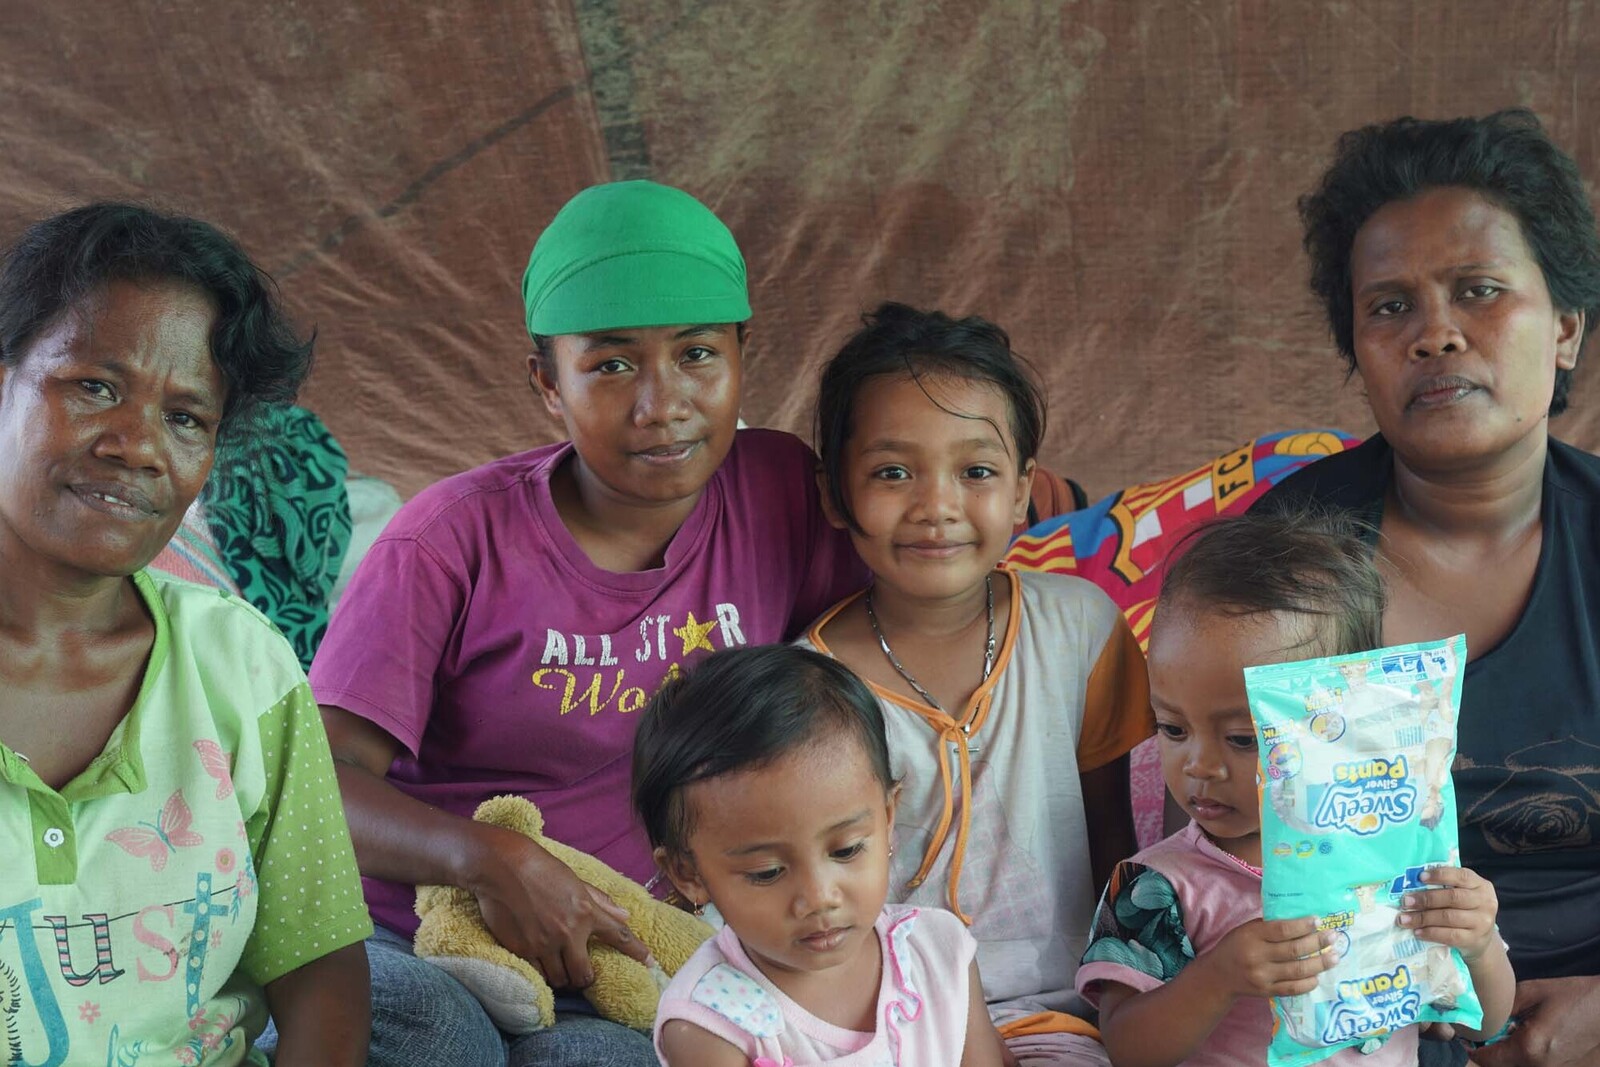 Die Frauen erhielten nach der Naturkatastrophe in Indonesien Nothilfe